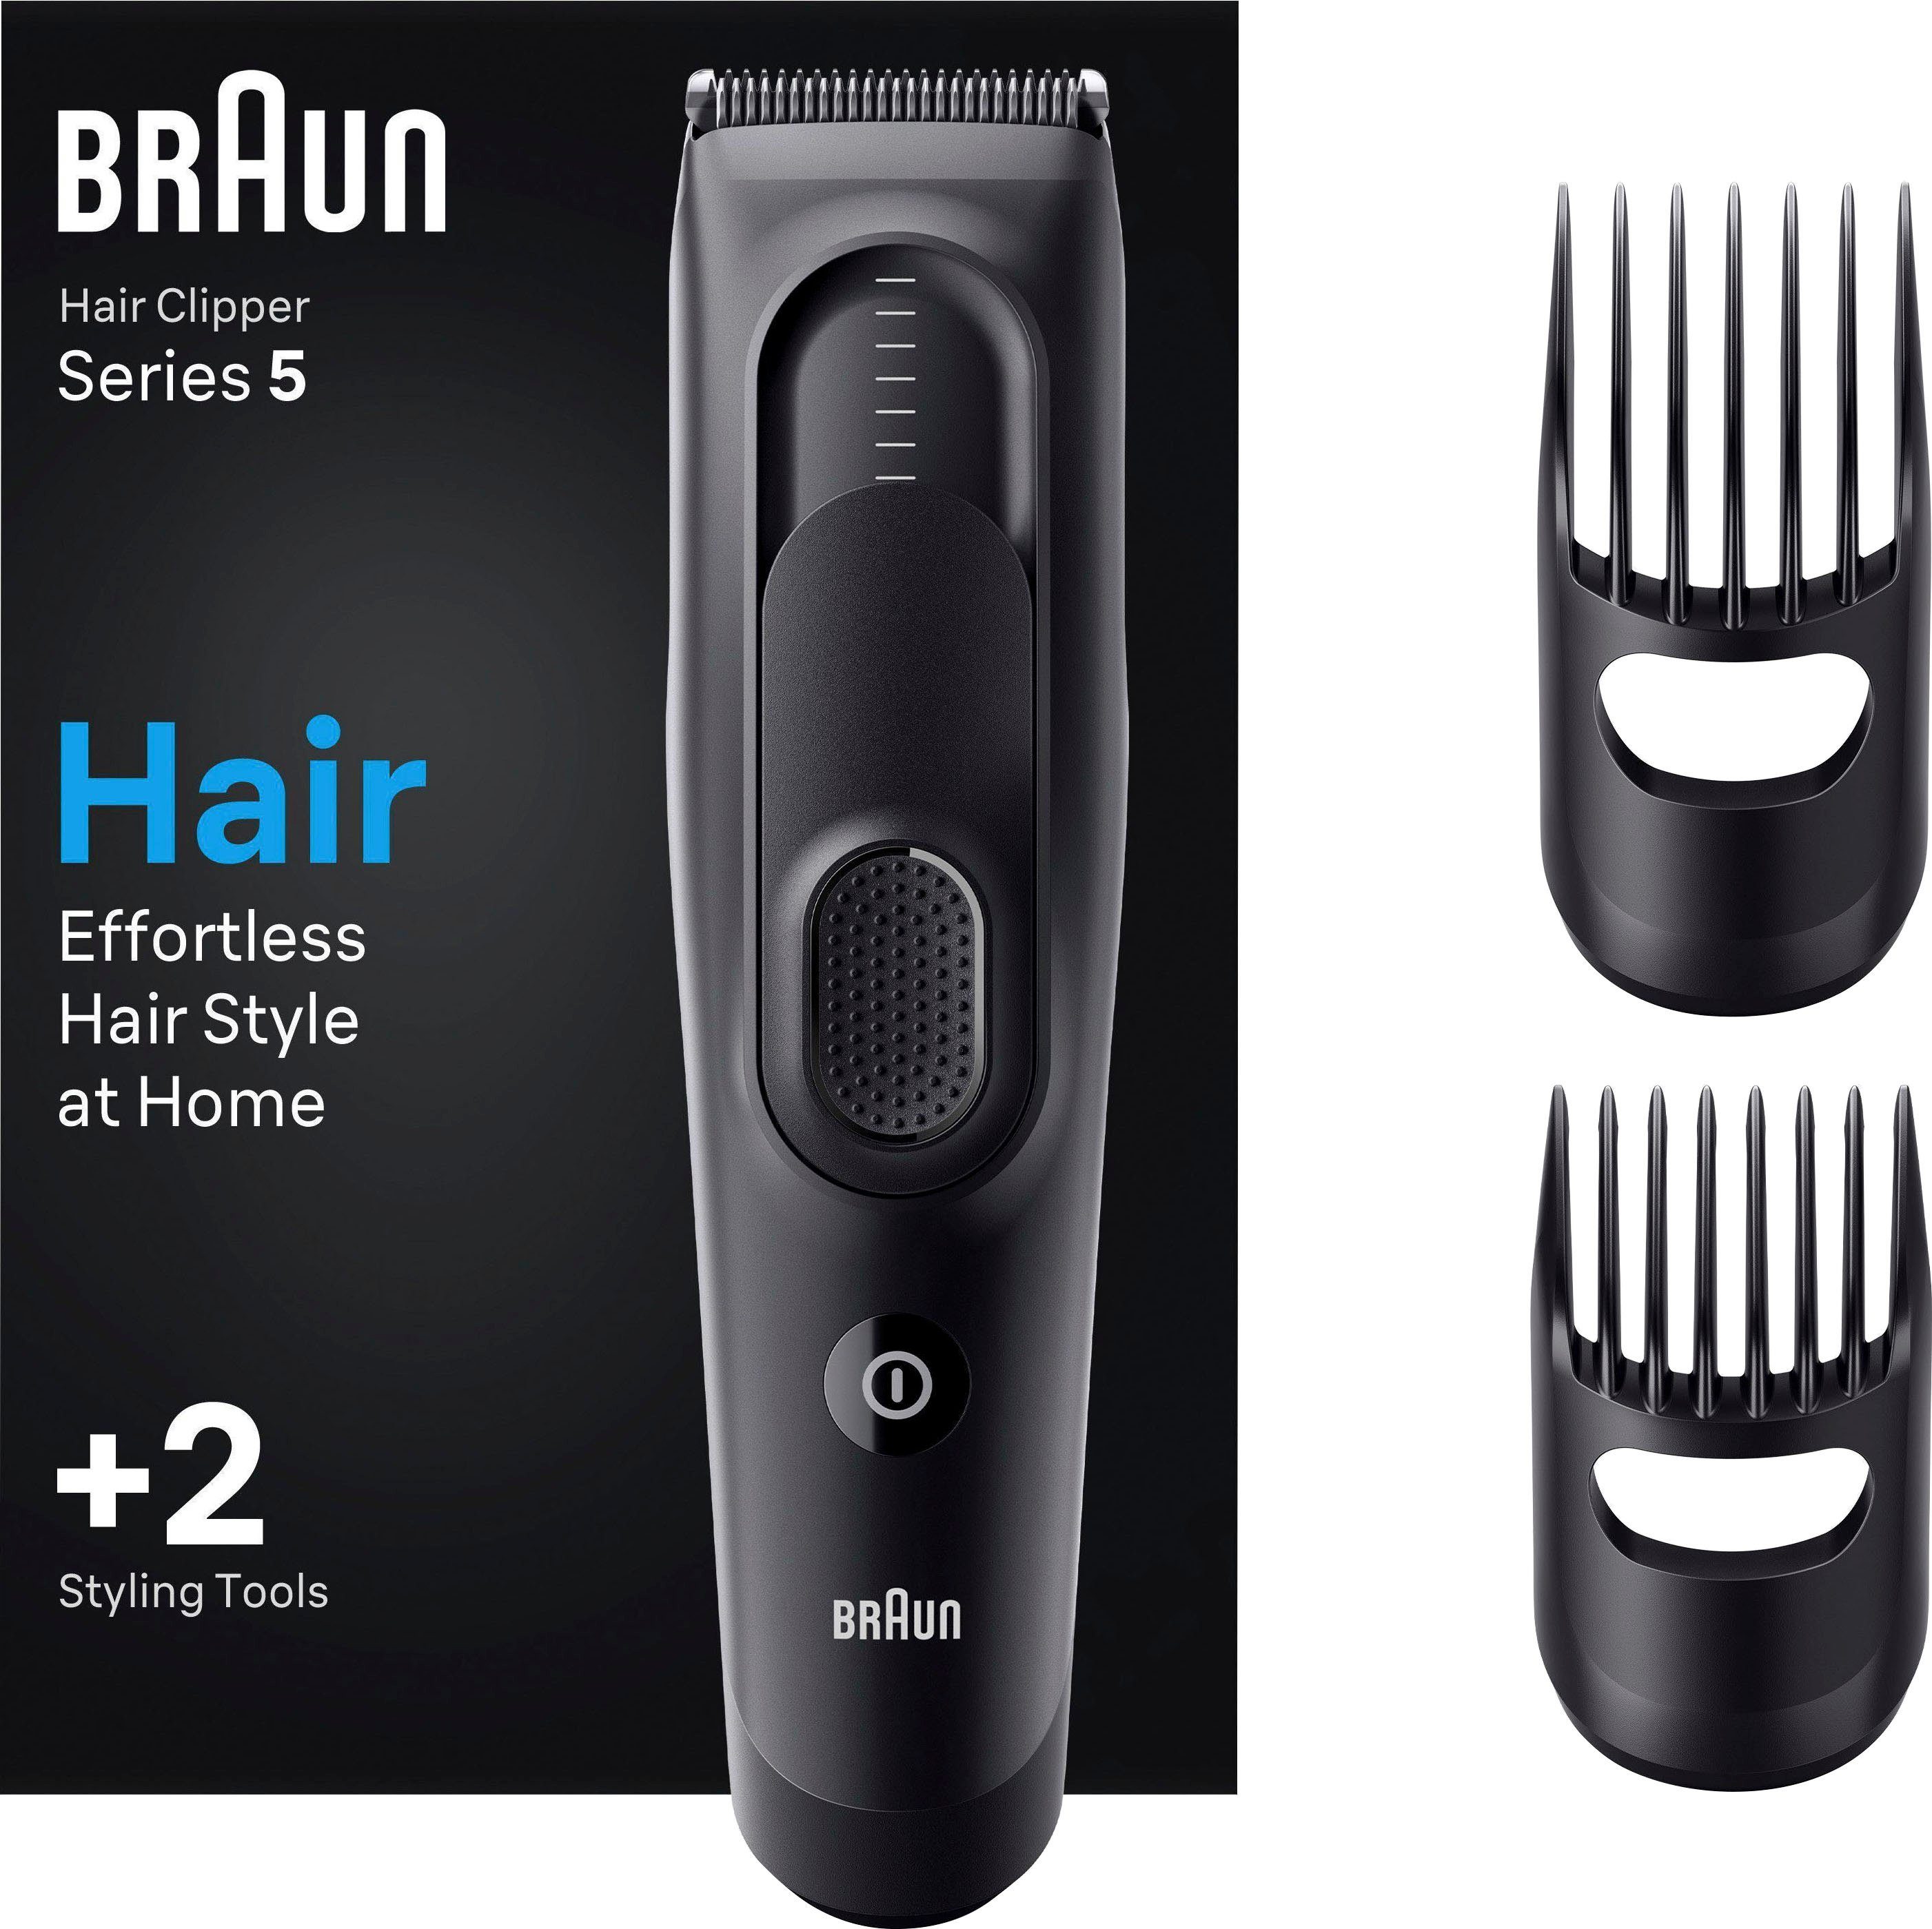 Braun HC5330, 17 Haarschneider Abwaschbar Haarschneider Längeneinstellungen,